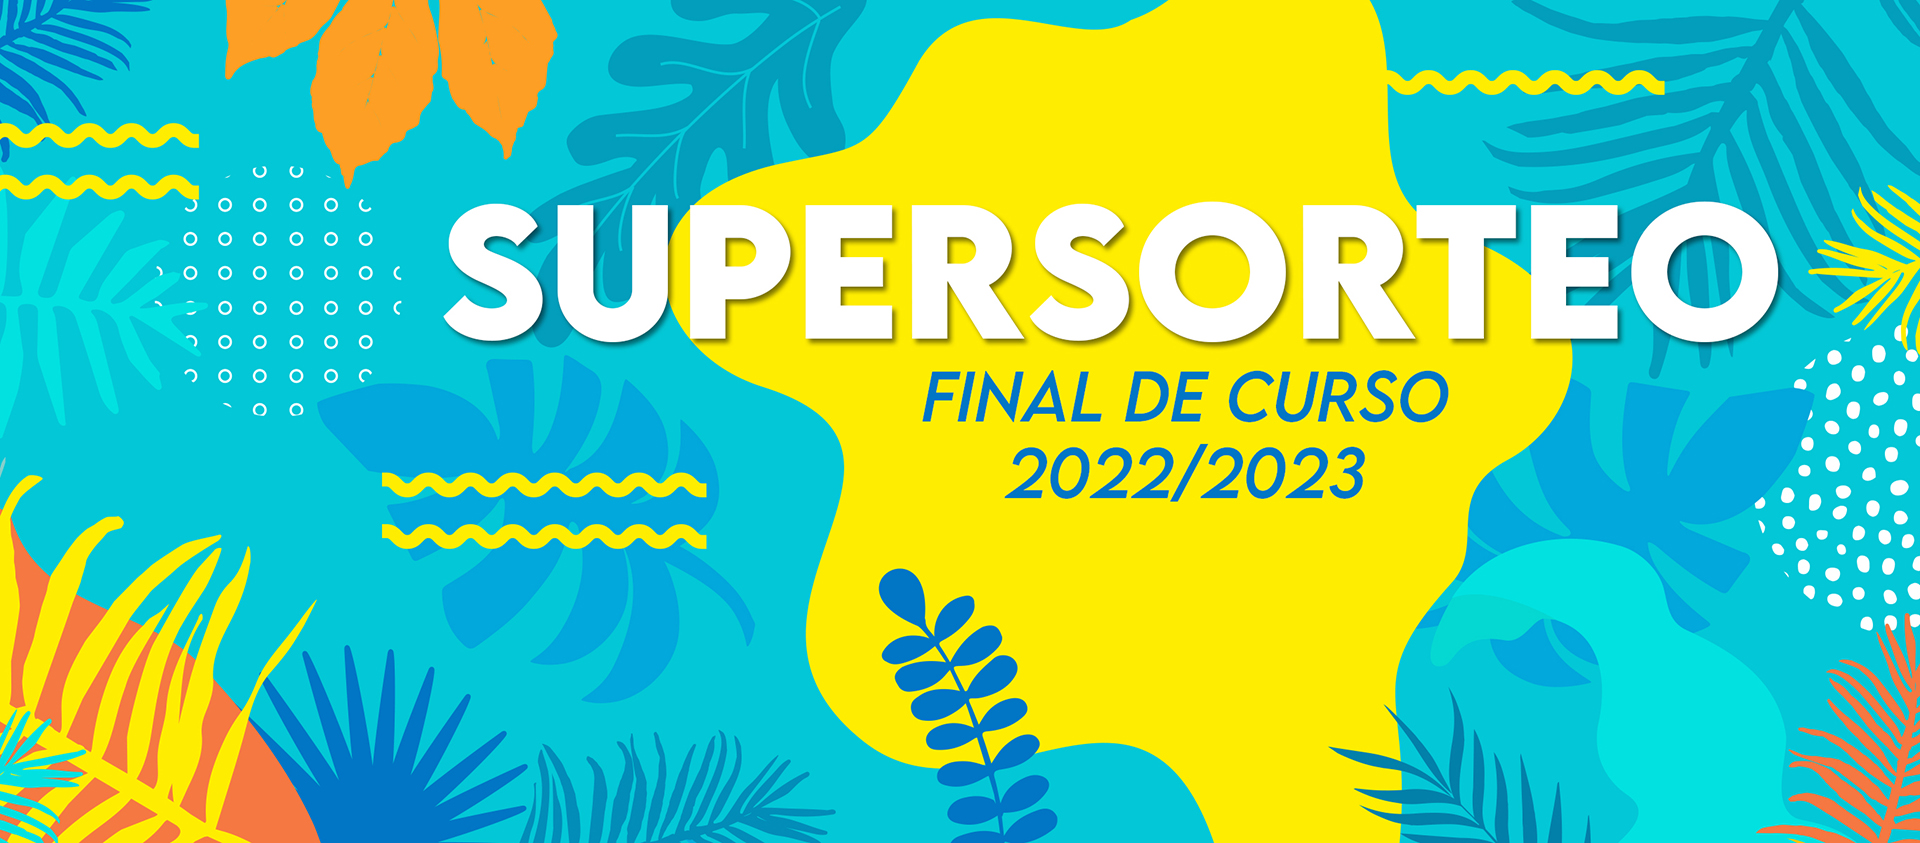 Supersorteo FINAL DE CURSO - A.M.P.A. CEIP Clara Campoamor